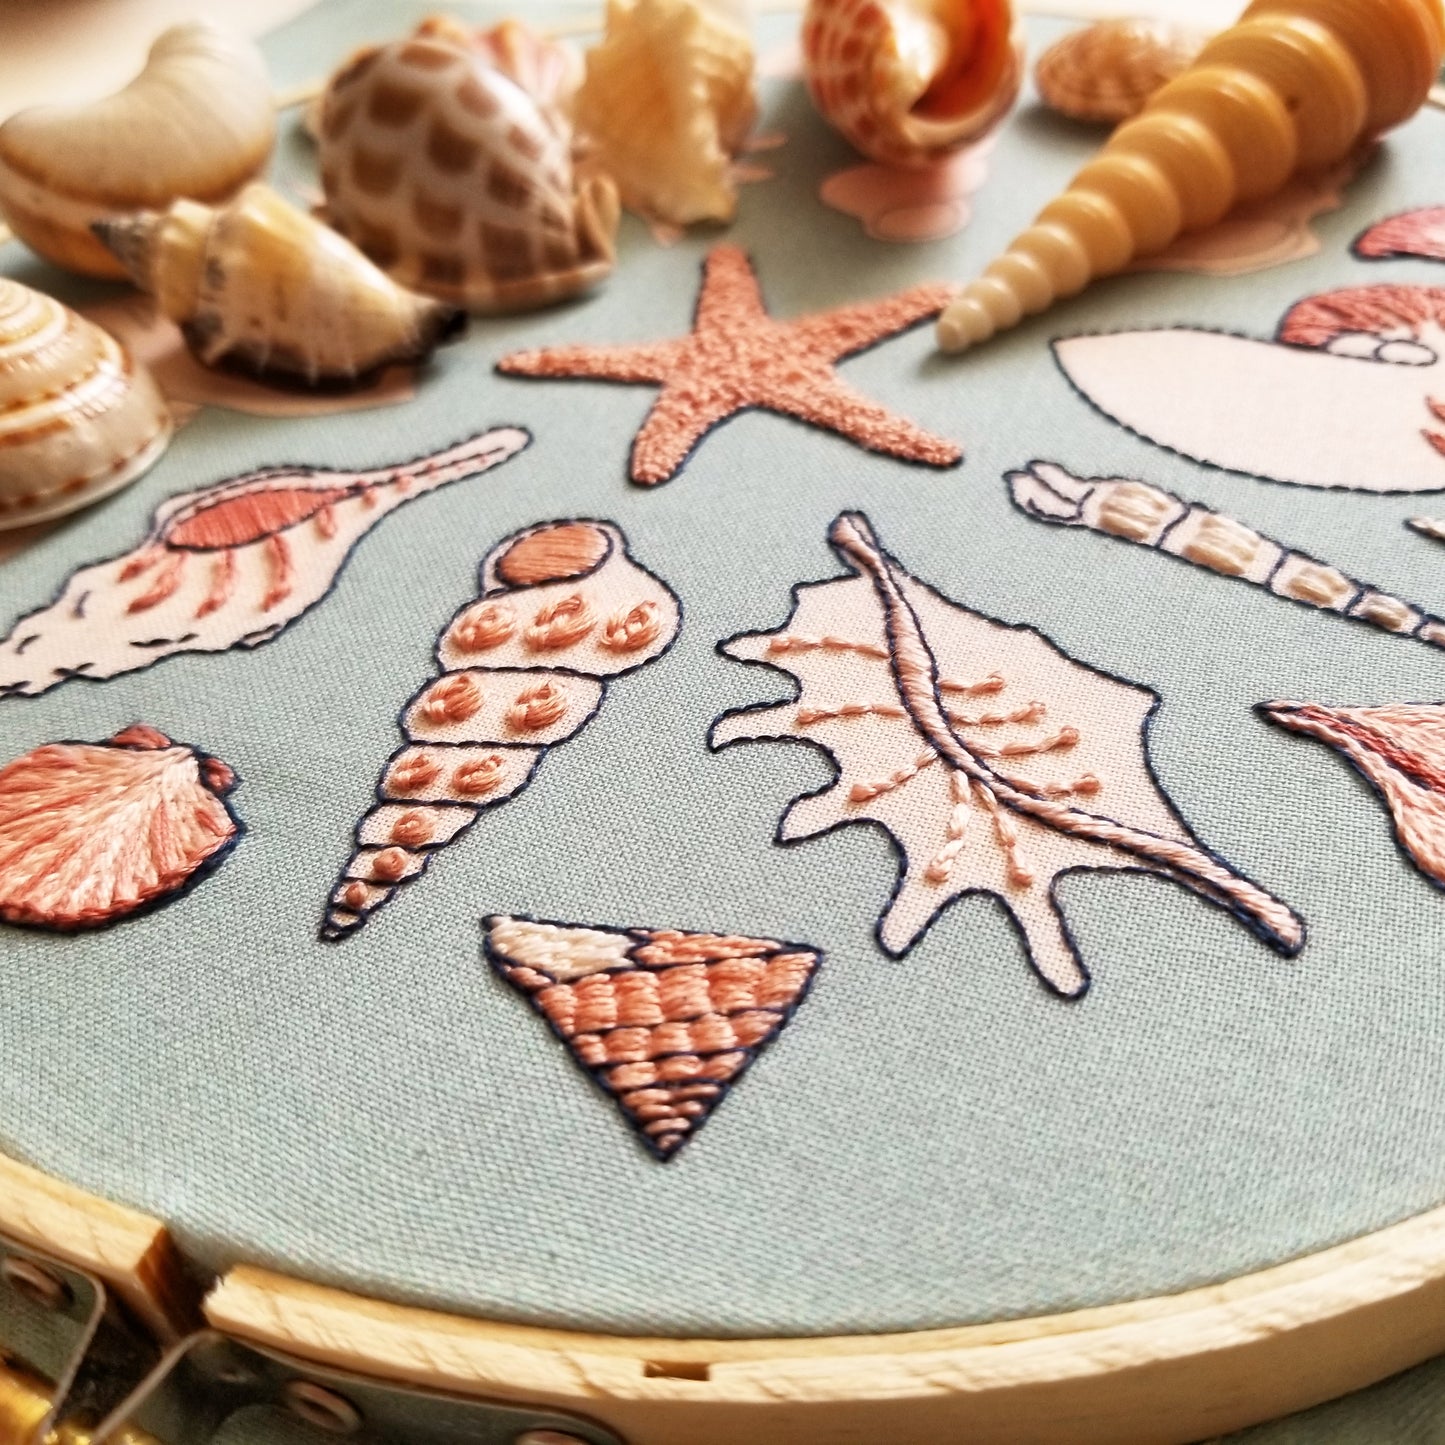 She Sews Seashells Embroidery Pattern (PDF)